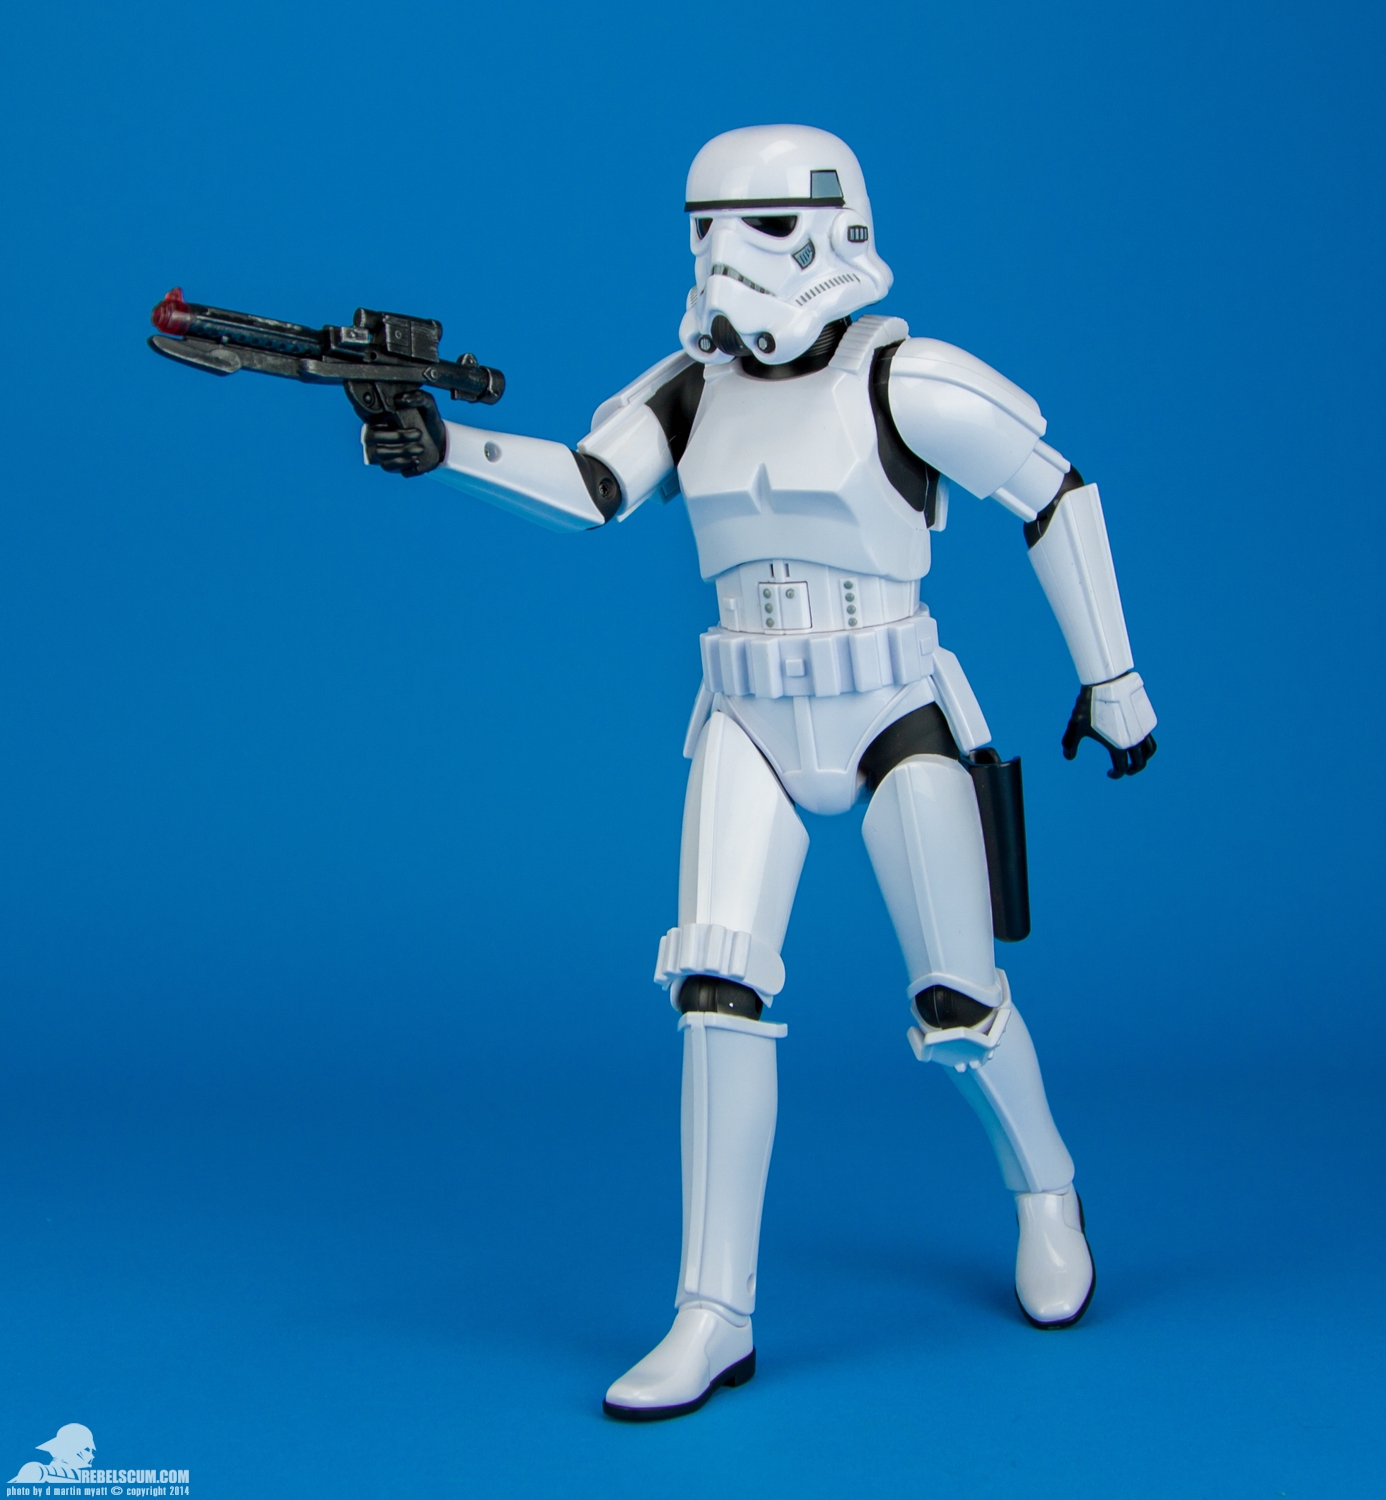 Disney-Store-Exclusive-Talking-Stormtrooper-009.jpg